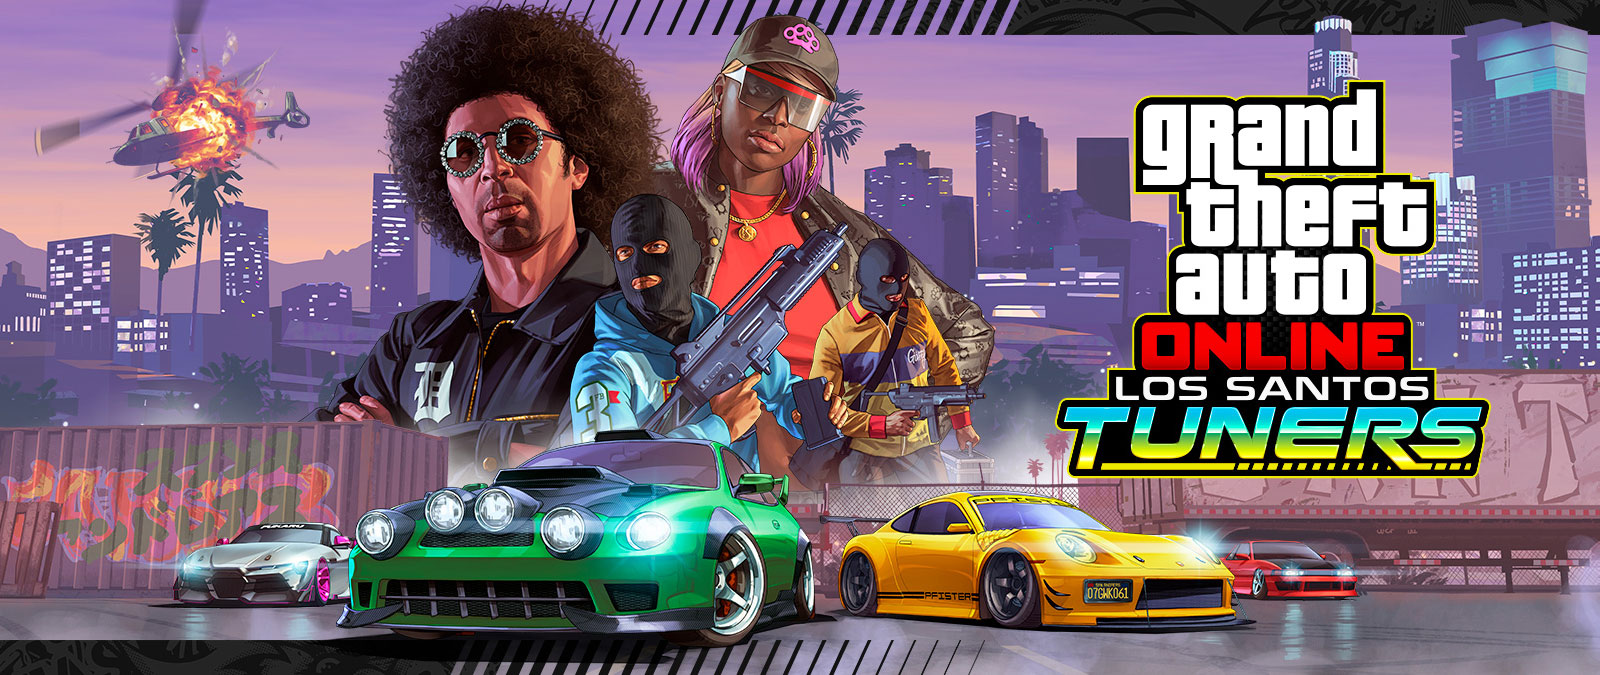 Grand Theft Auto Online, Los Santos Tuners. Quatro personagens posando na frente de um horizonte da cidade e quatro supercarros abaixo deles 